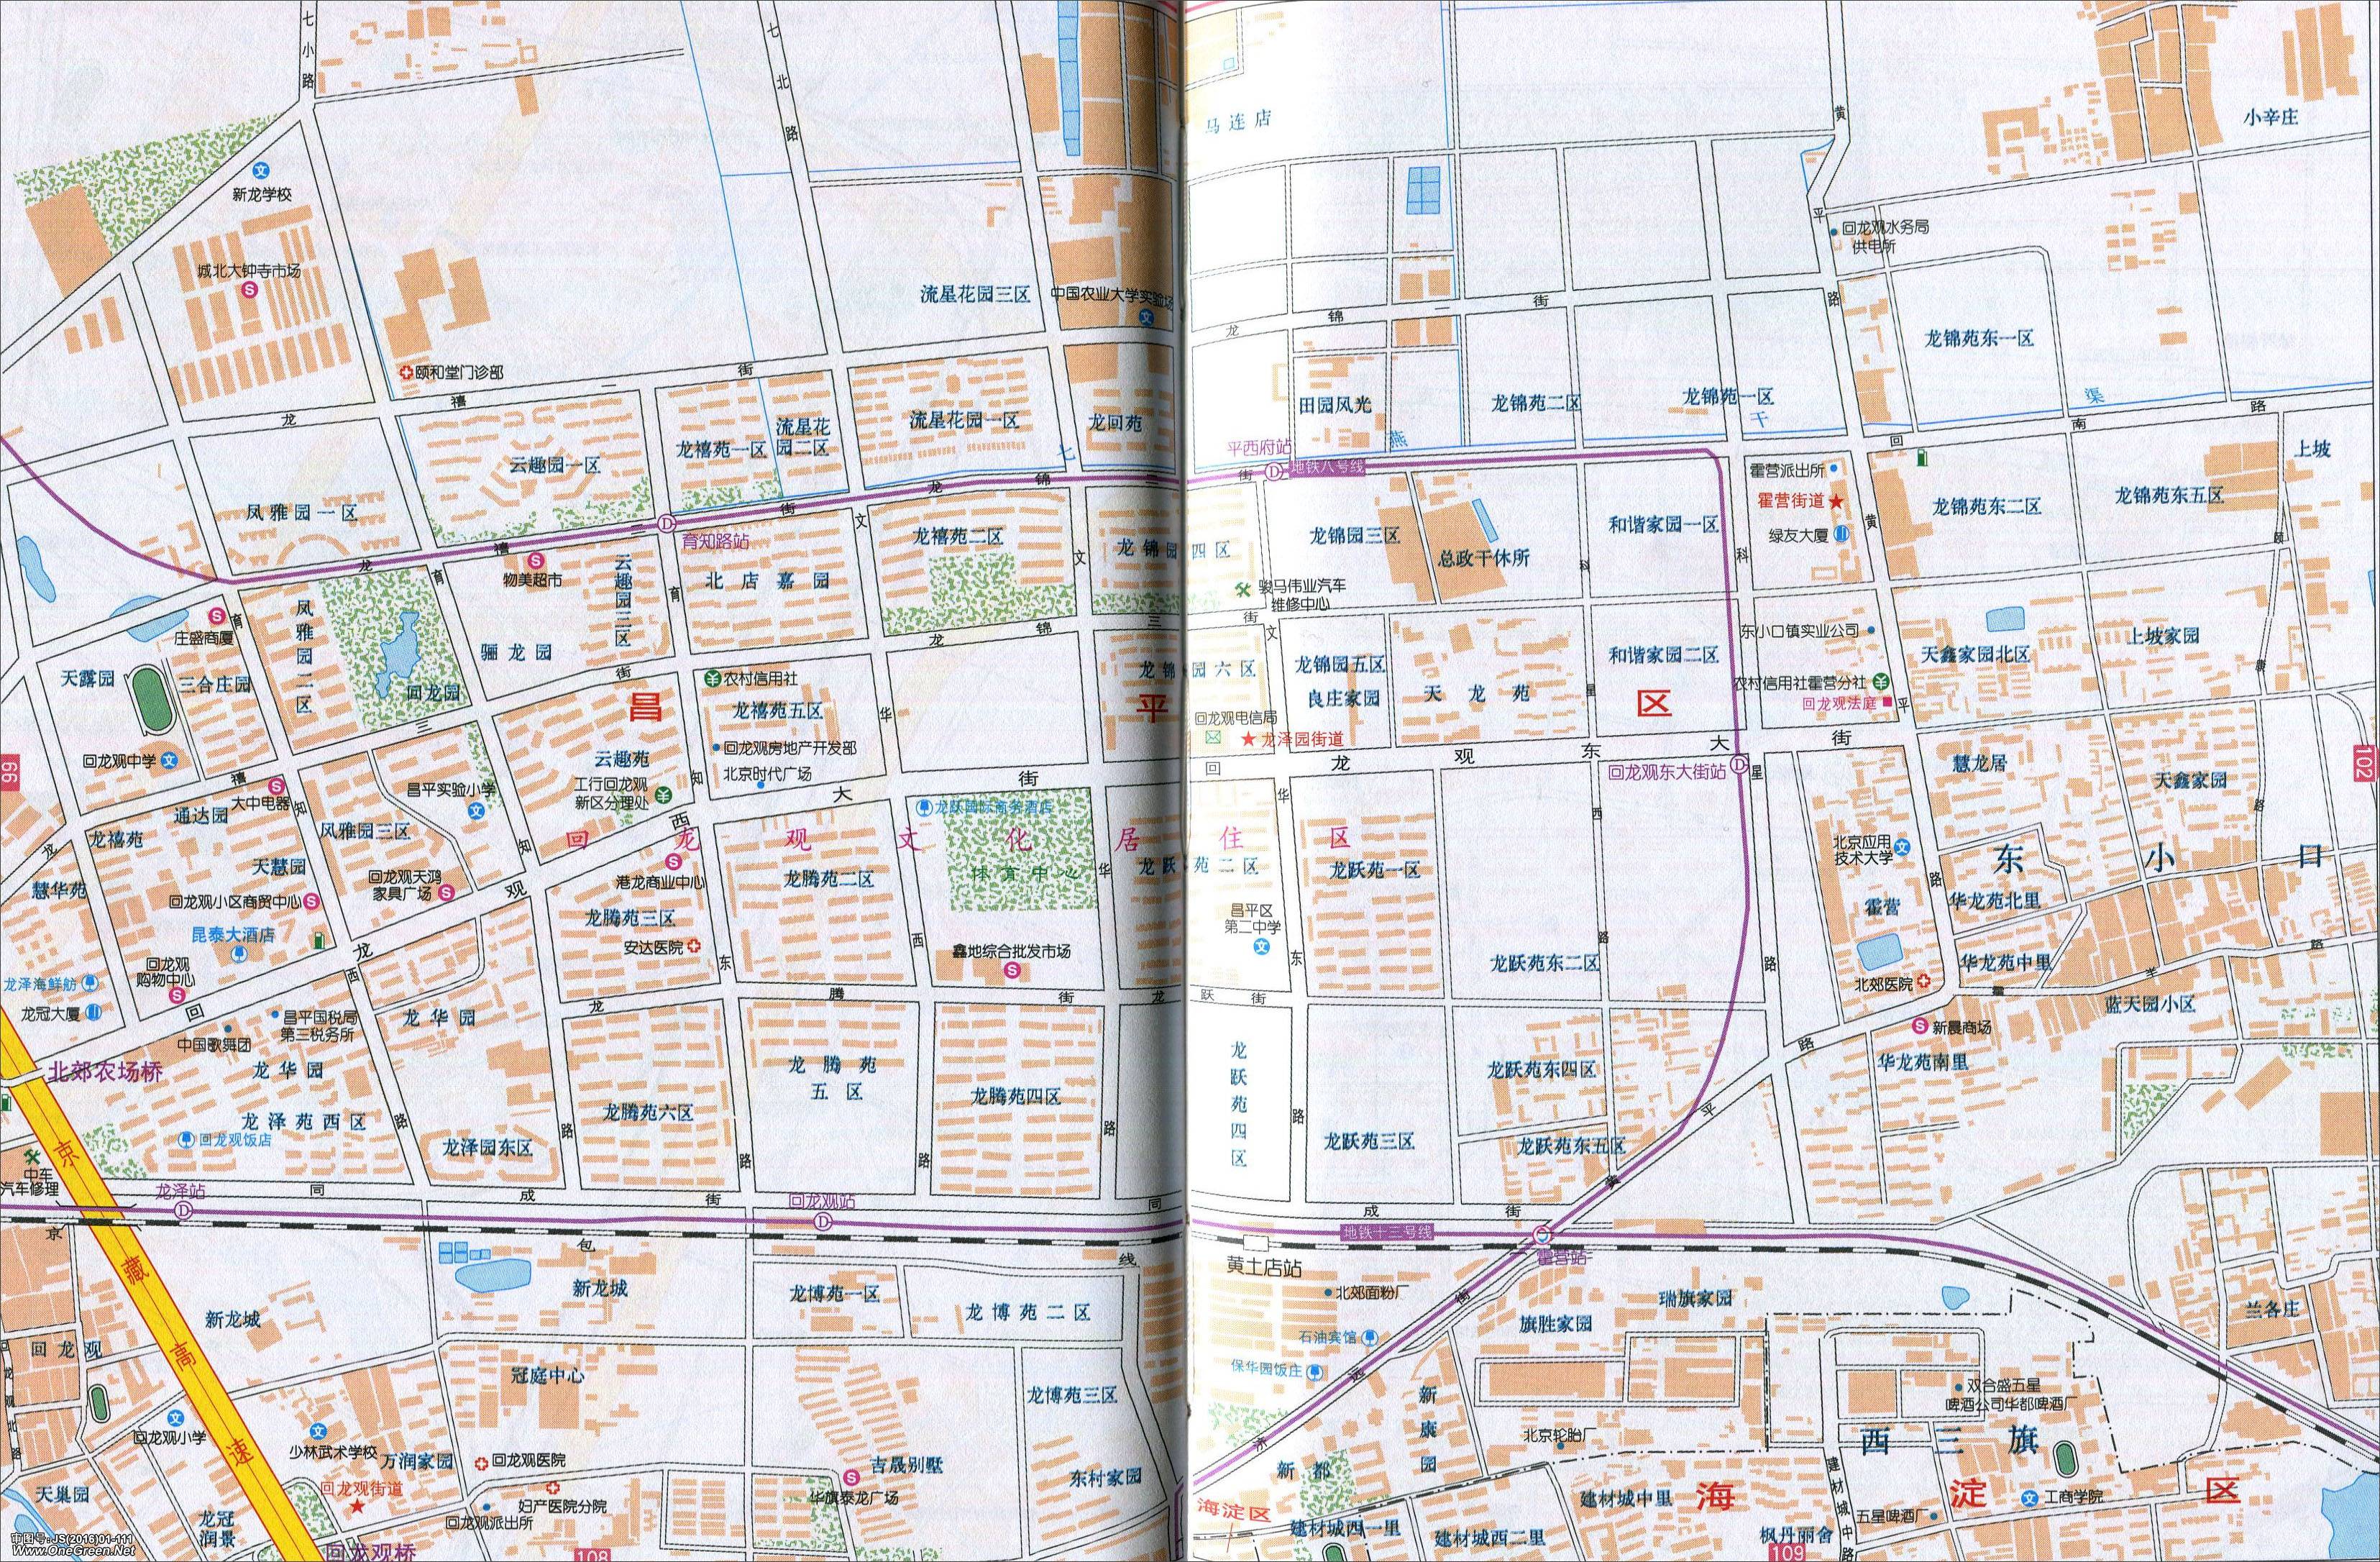 北京区县地图集  北京城区地图集 上一张地图: 北京建国门地图图片